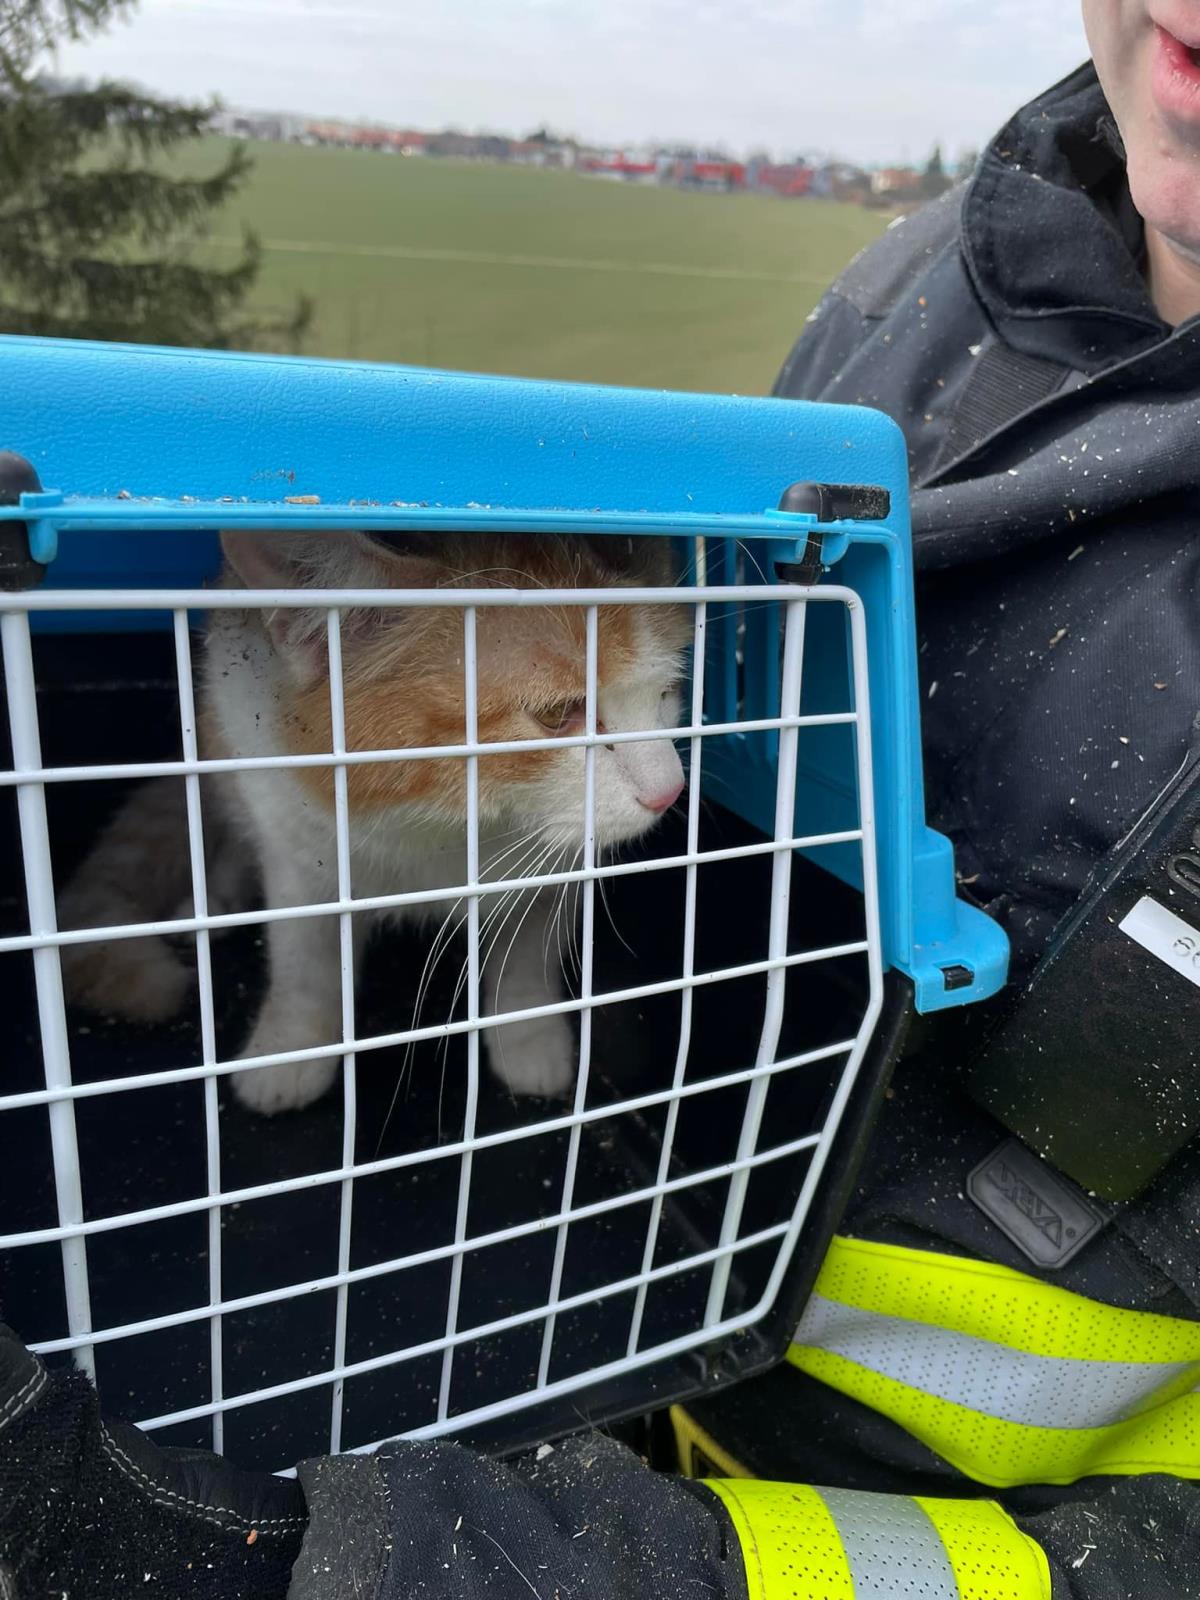 SČK - Zachráněná kočka v přepravce.jpg